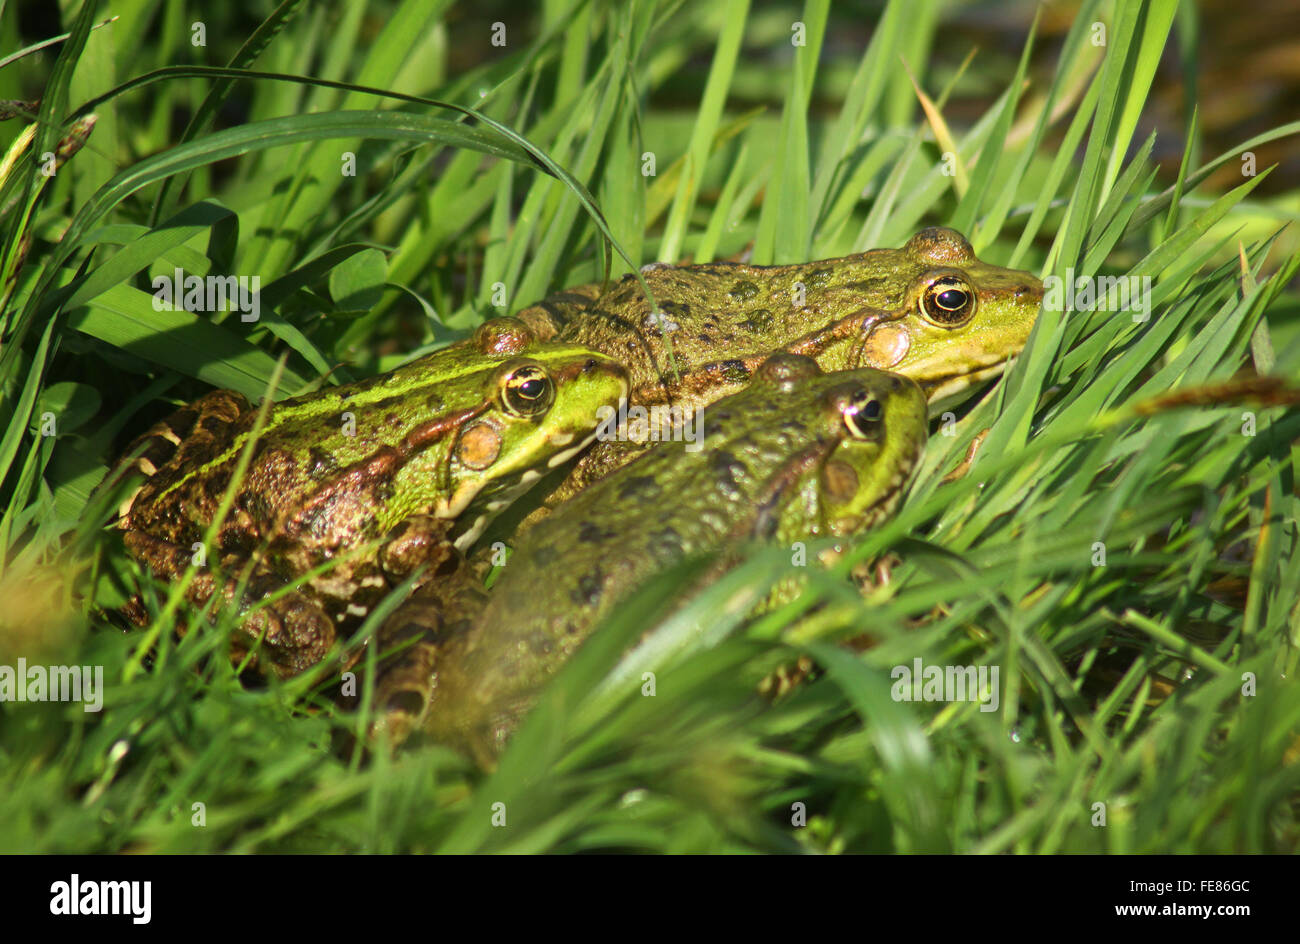 Gran árbol ranas verdes (American Bullfrog) sentados en el césped Foto de stock